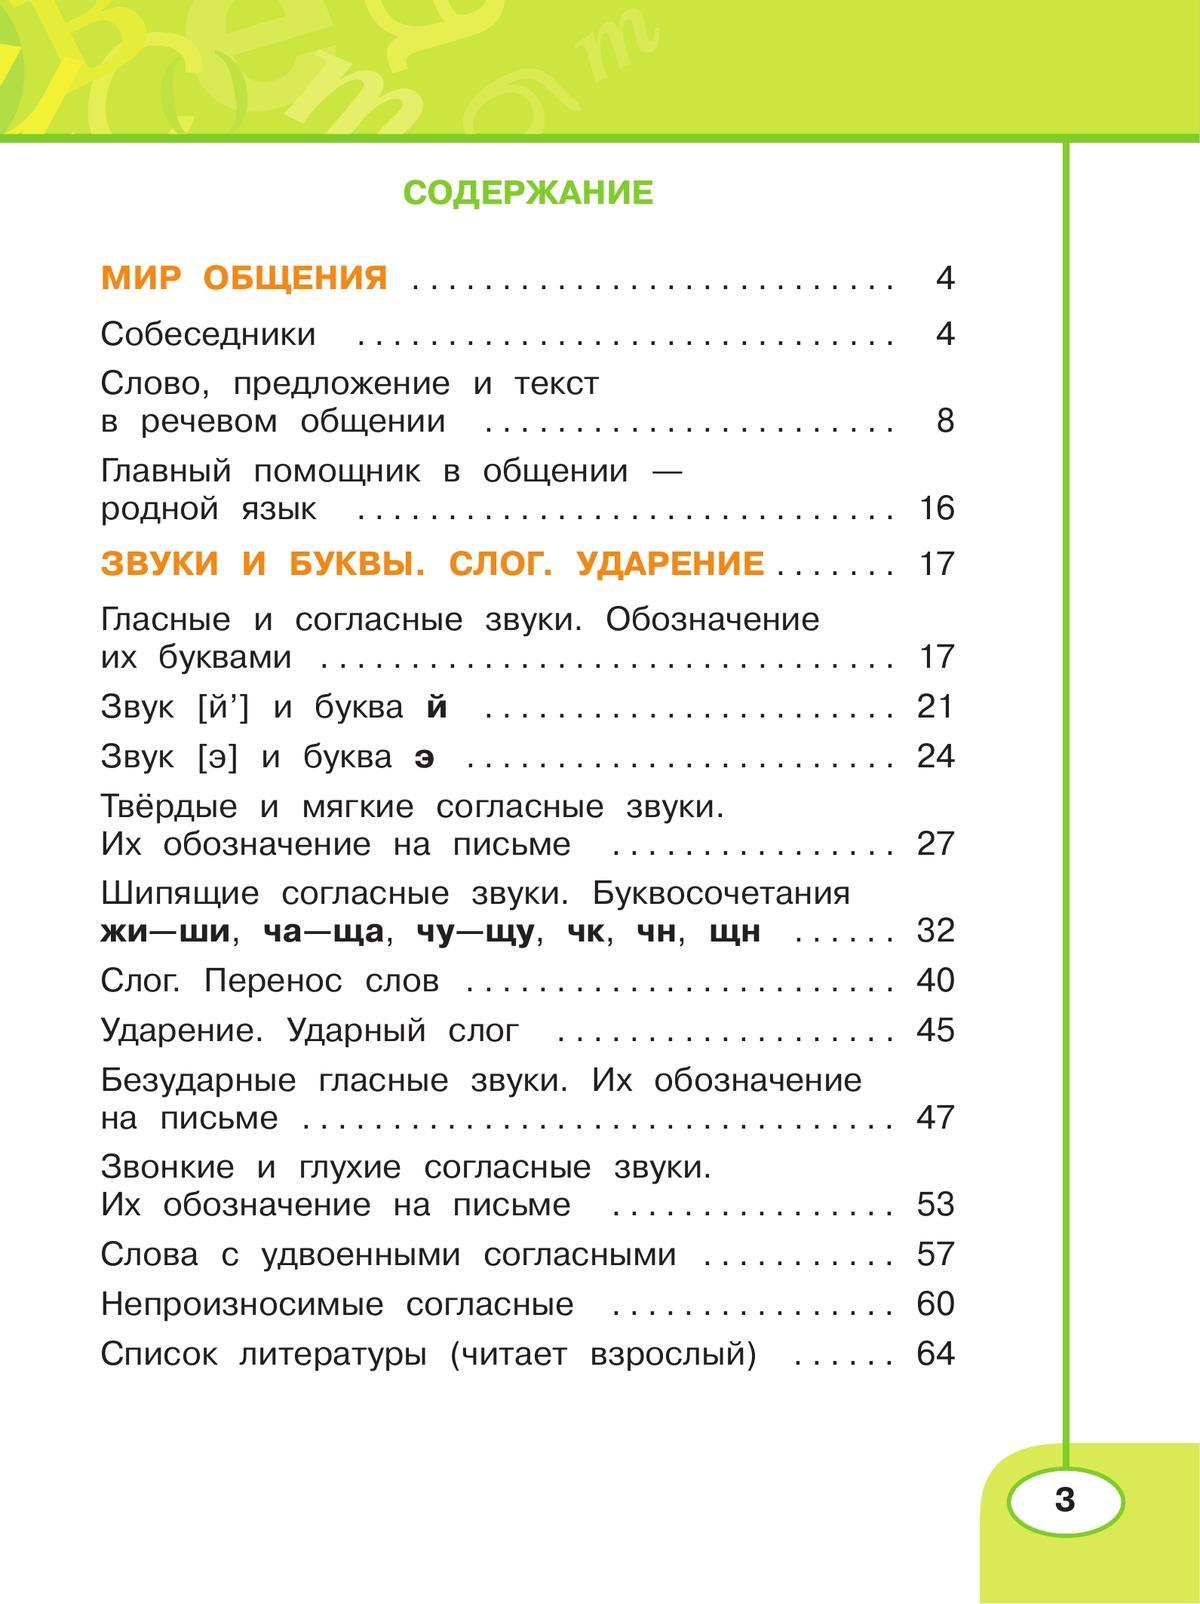 Русский язык. Рабочая тетрадь. 2 класс. В 2 частях. Часть 1 7